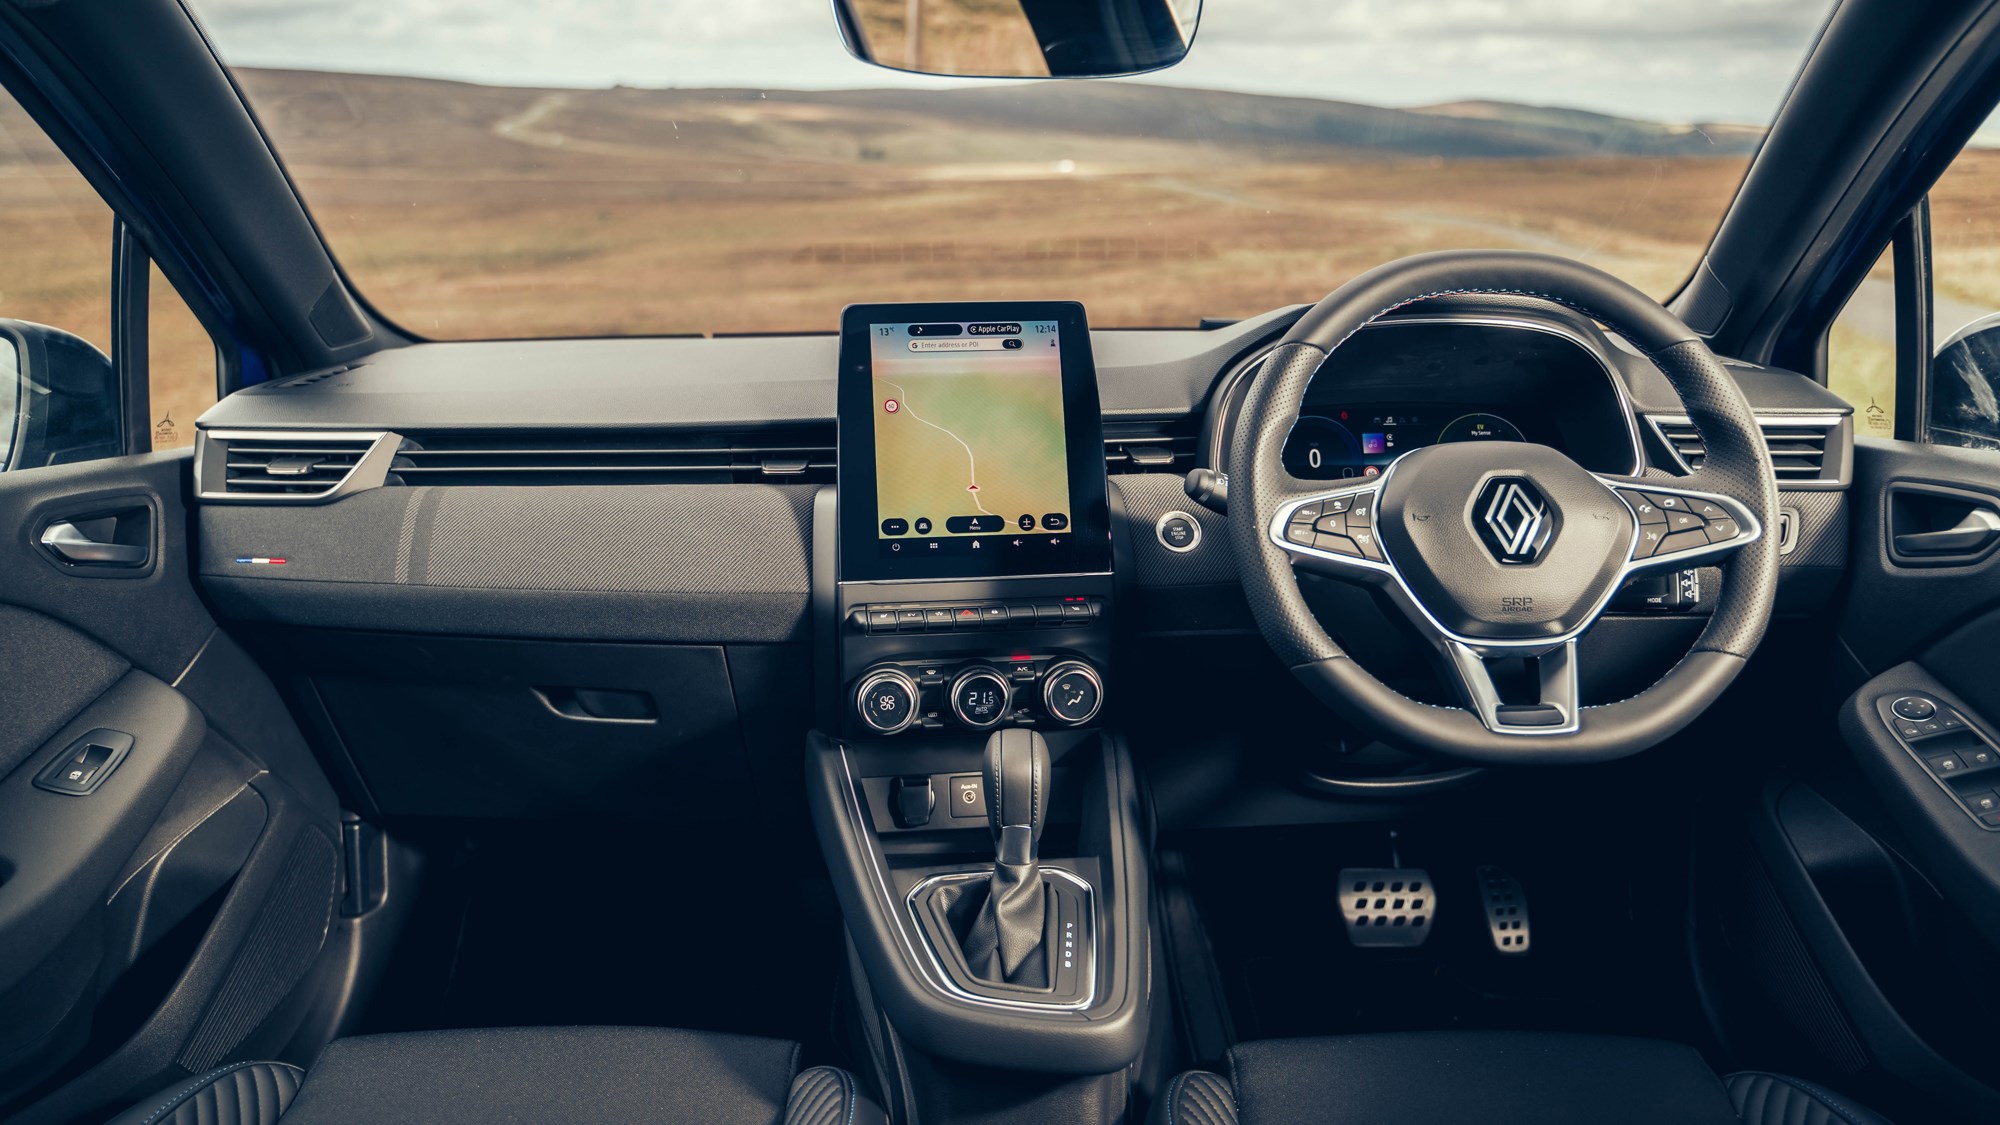 Renault Clio E-Tech hybrid review